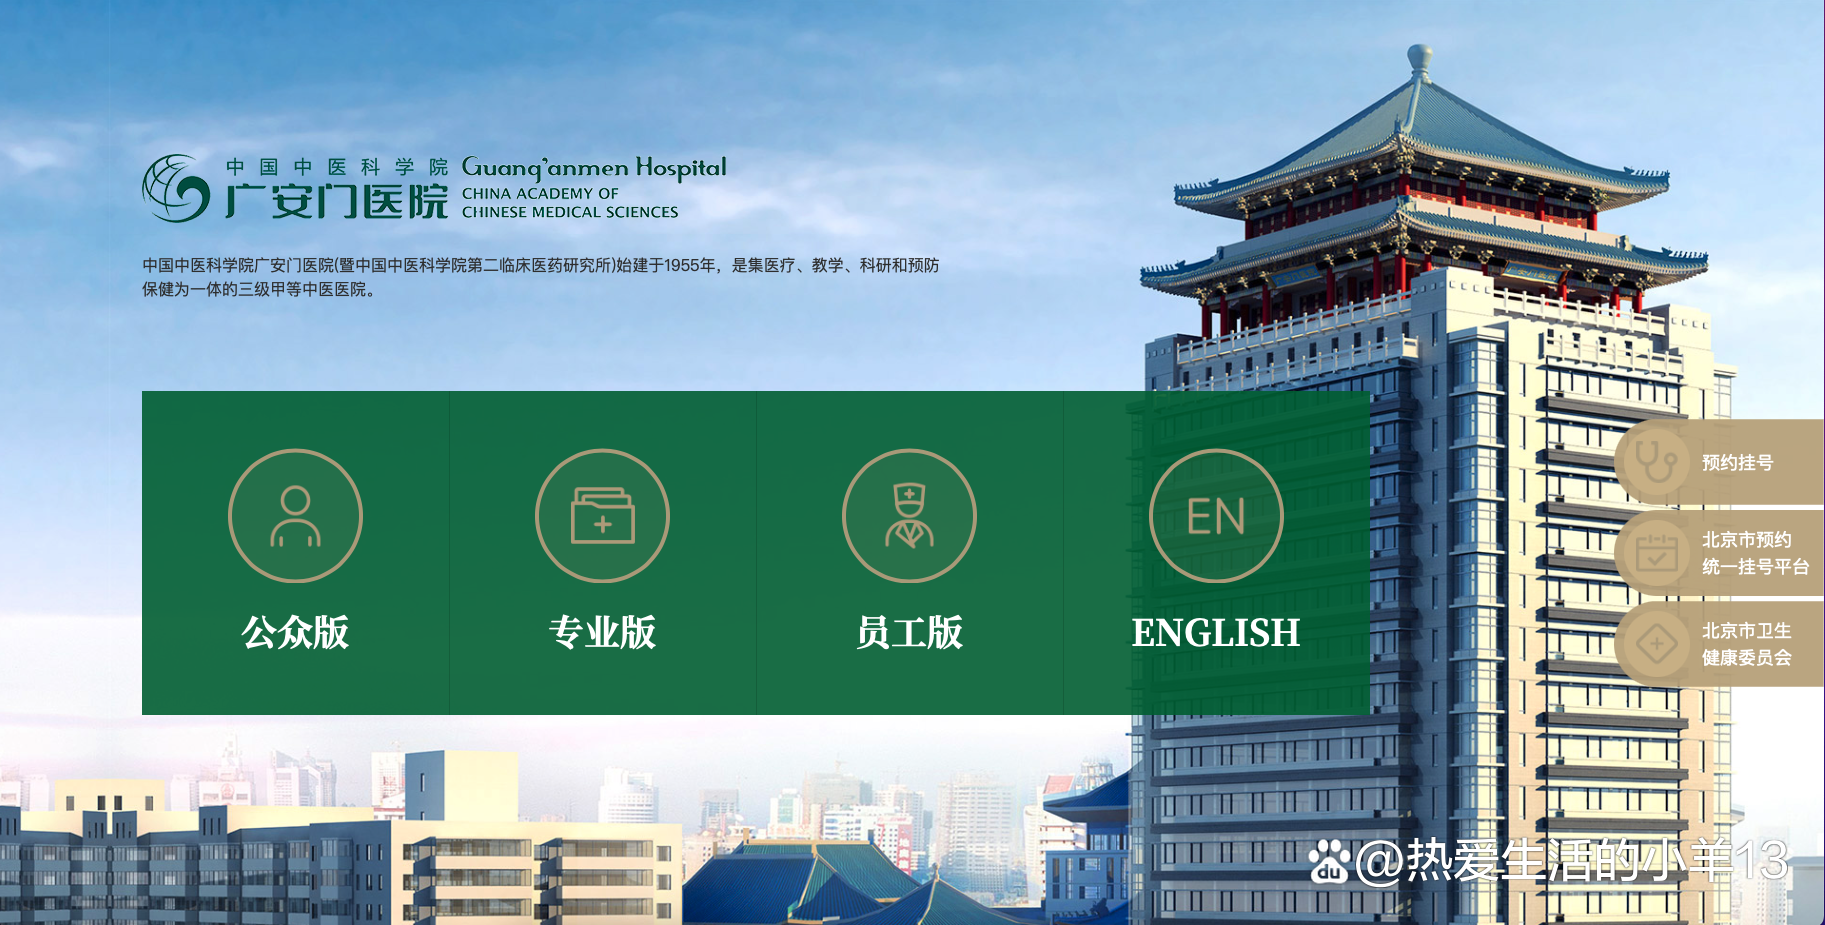 包含中国中医科学院广安门医院